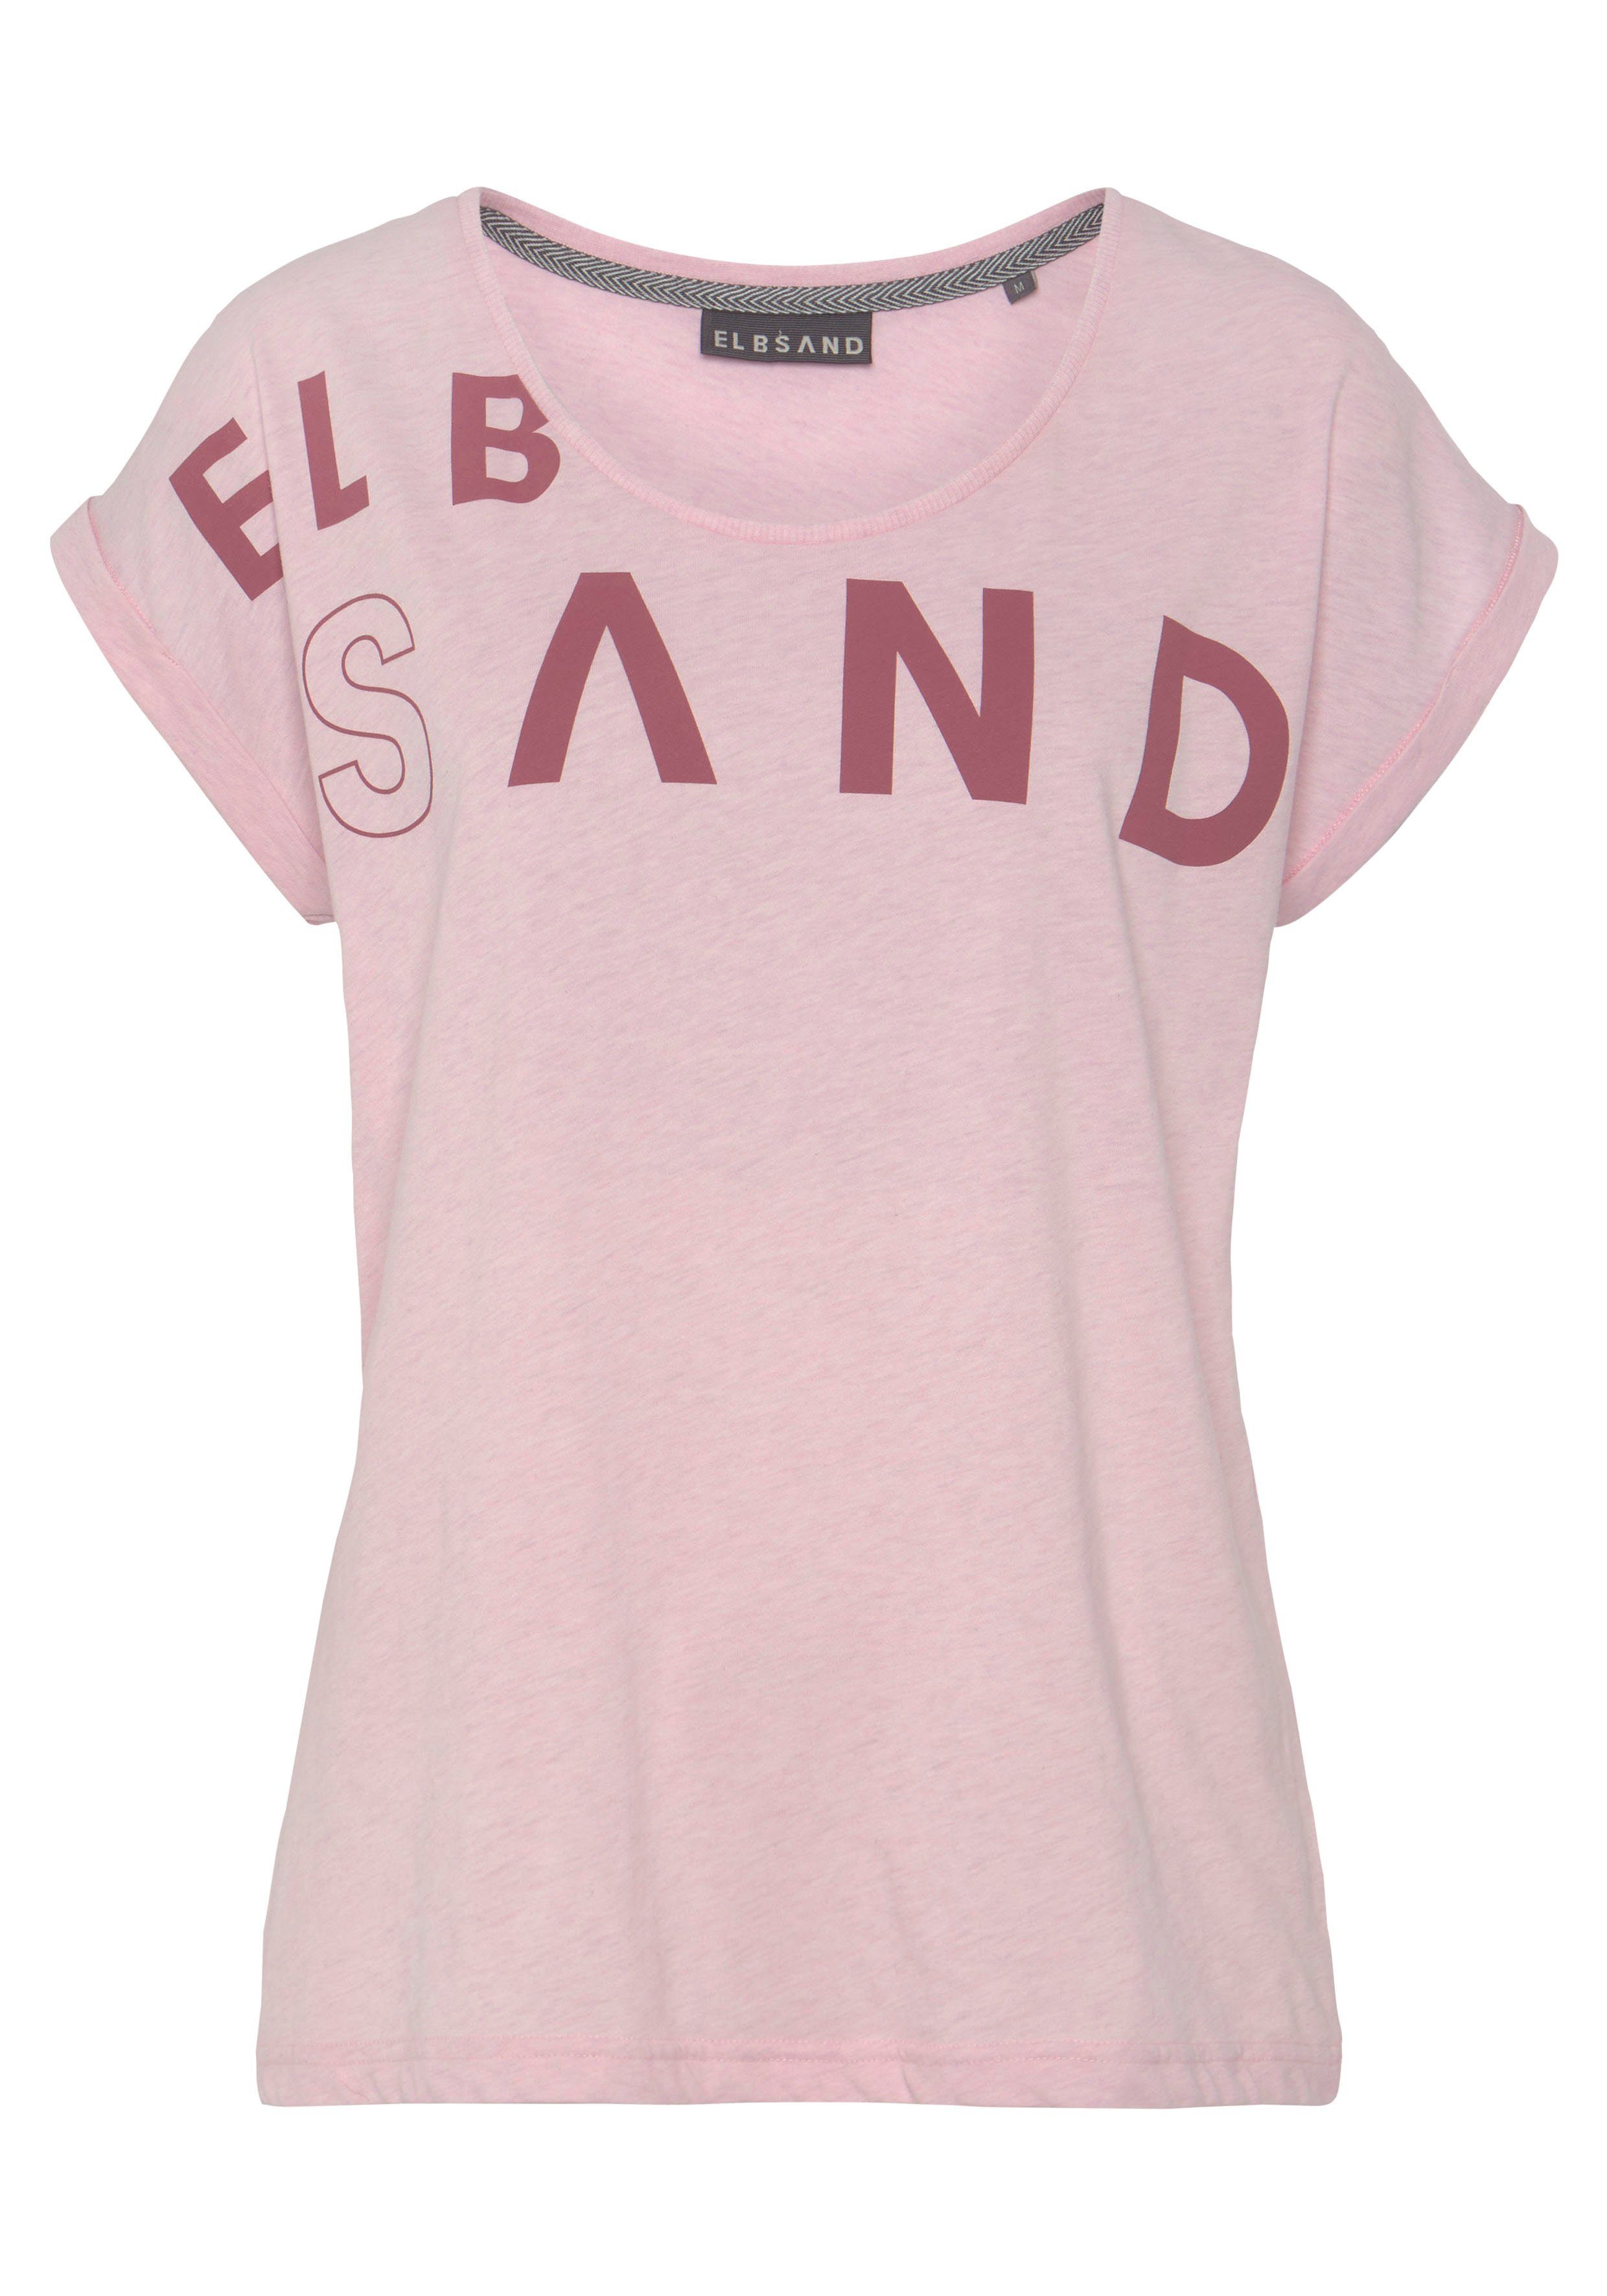 Elbsand T-Shirt aus und weichem sportlich Jersey, bequem Kurzarmshirt, rosa